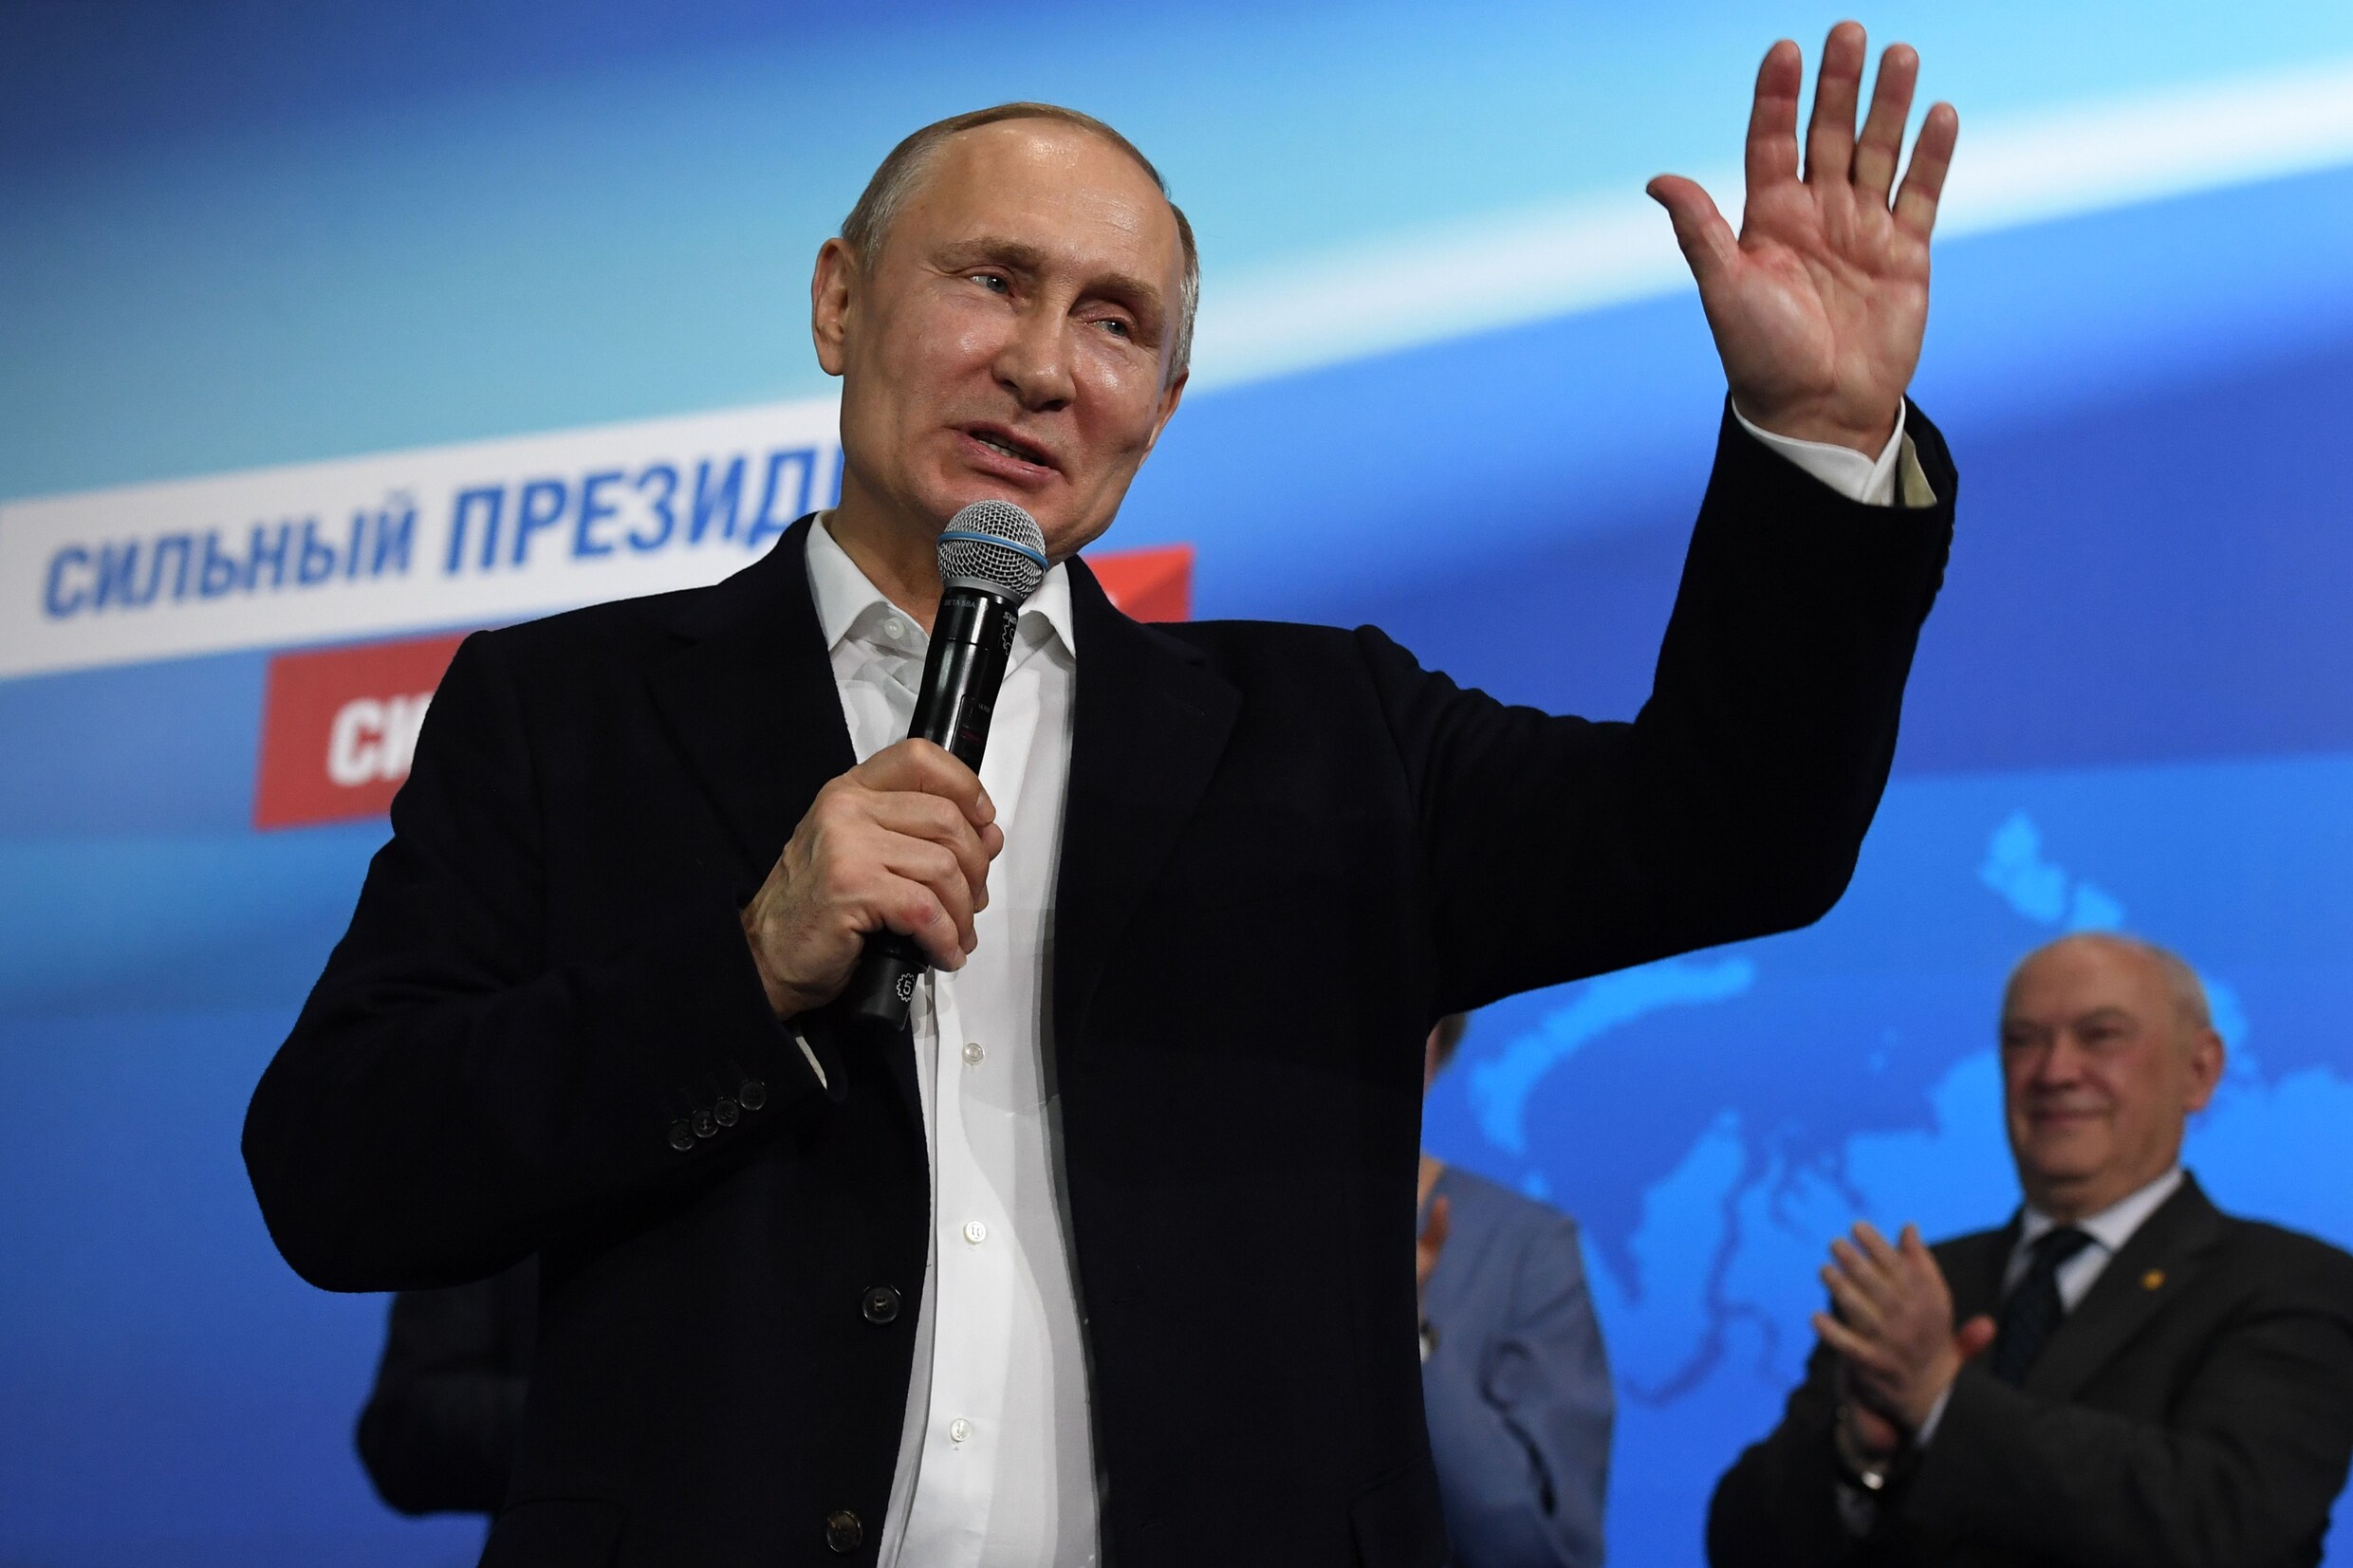 Poetin herkozen met 77 procent van de stemmen, beste resultaat uit zijn carrière